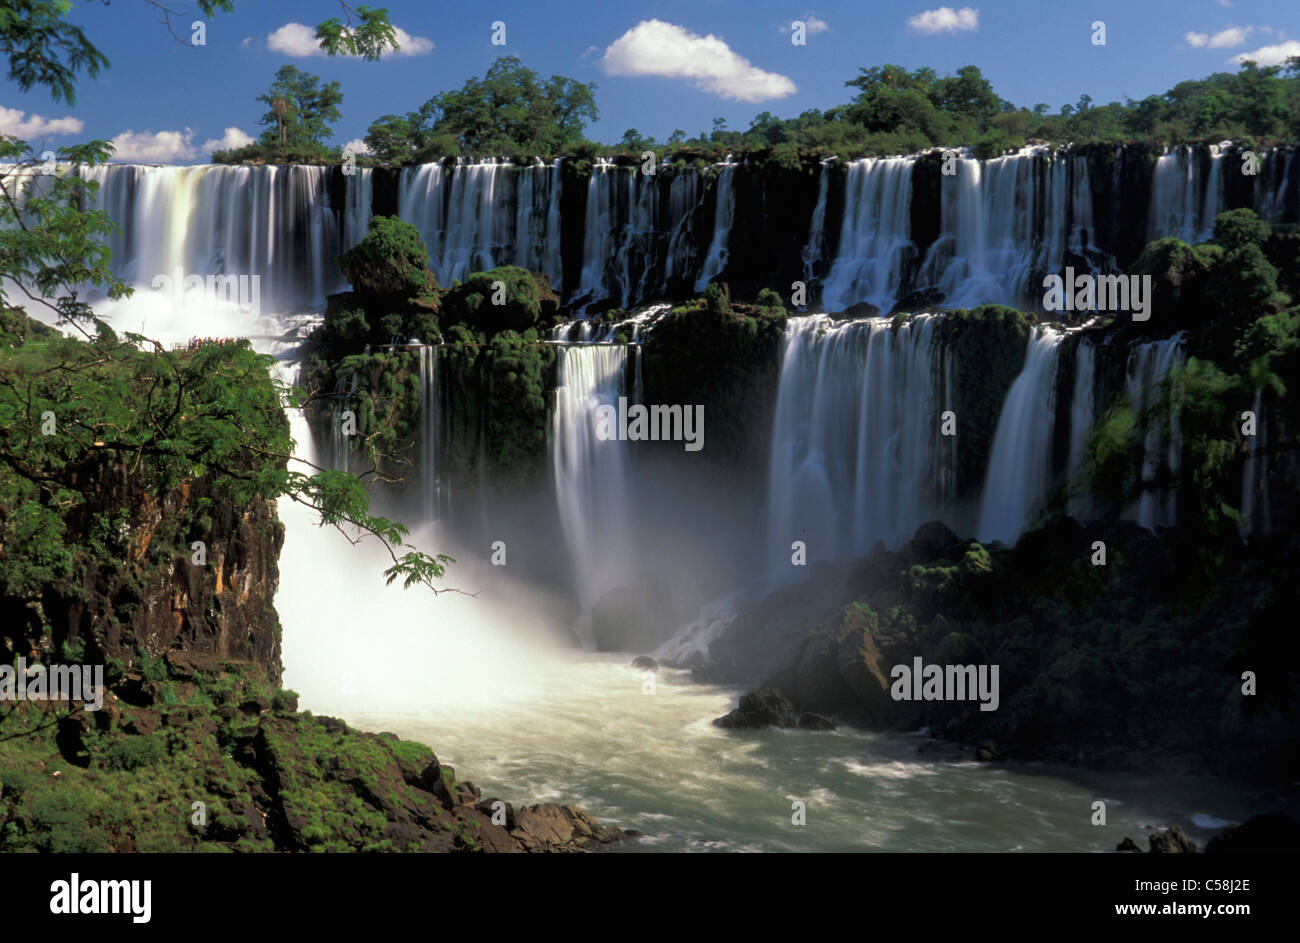 Parque National Iguazu, Cataratas do Iguazu, Iguazu Wasserfälle, Foz do Iguazu, Parana, Brasilien, Südamerika, Wasserfall, Baum Stockfoto